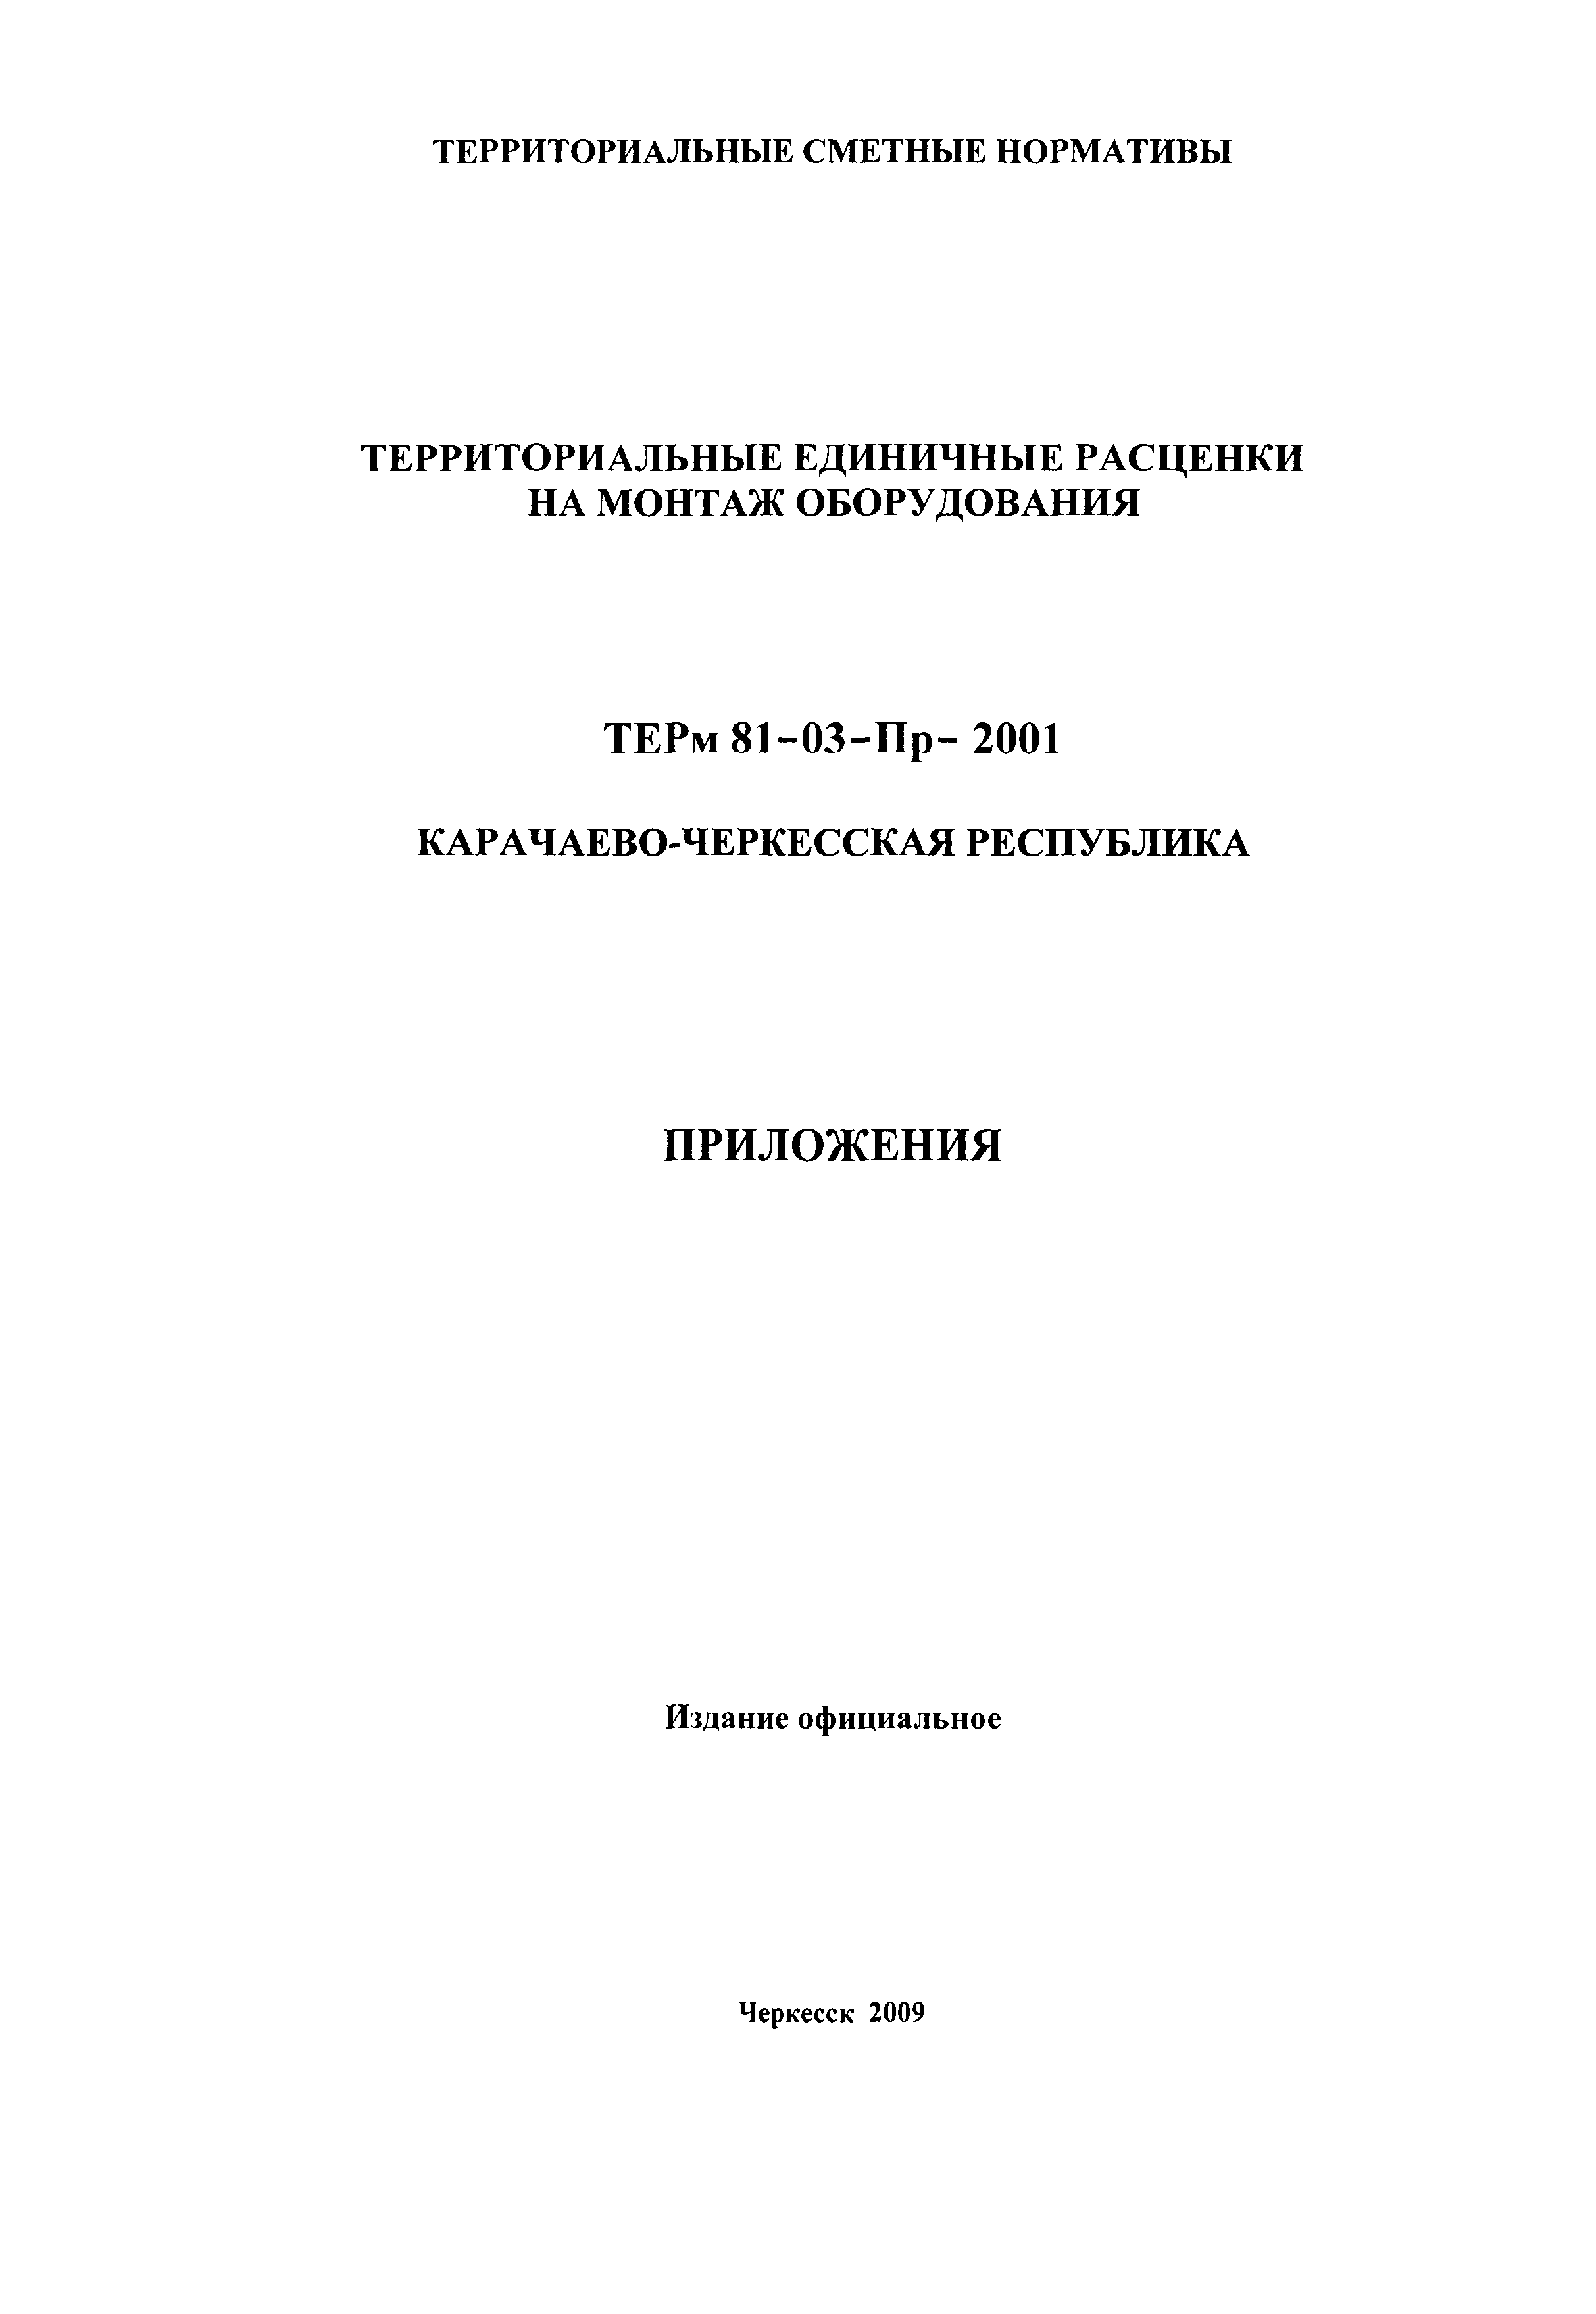 ТЕРм Карачаево-Черкесская Республика 2001-Пр